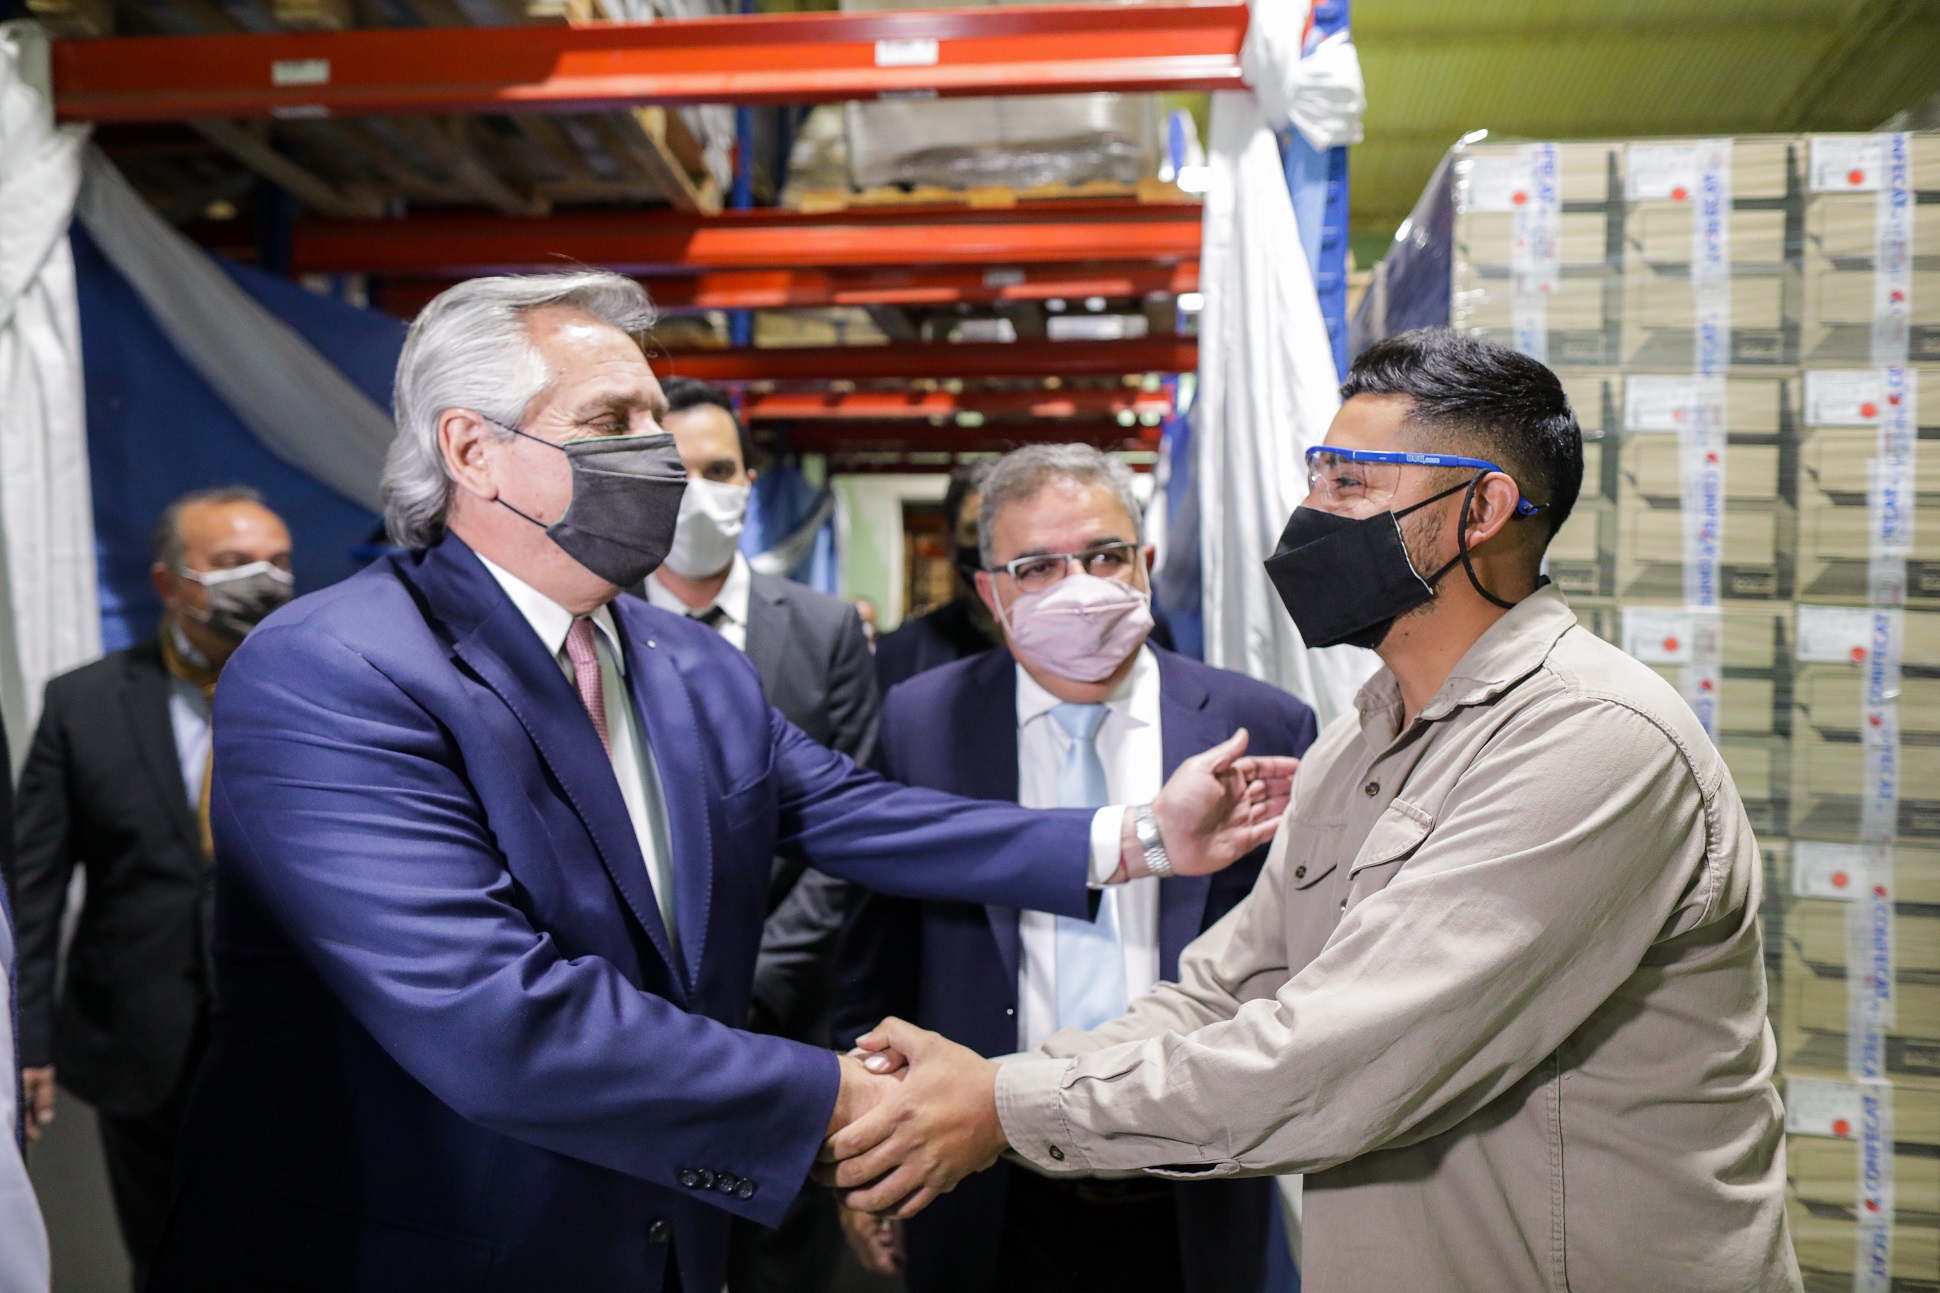 El Presidente, en Catamarca: “Hay reactivación porque hay vacunas”, remarcó tras visitar una fábrica textil